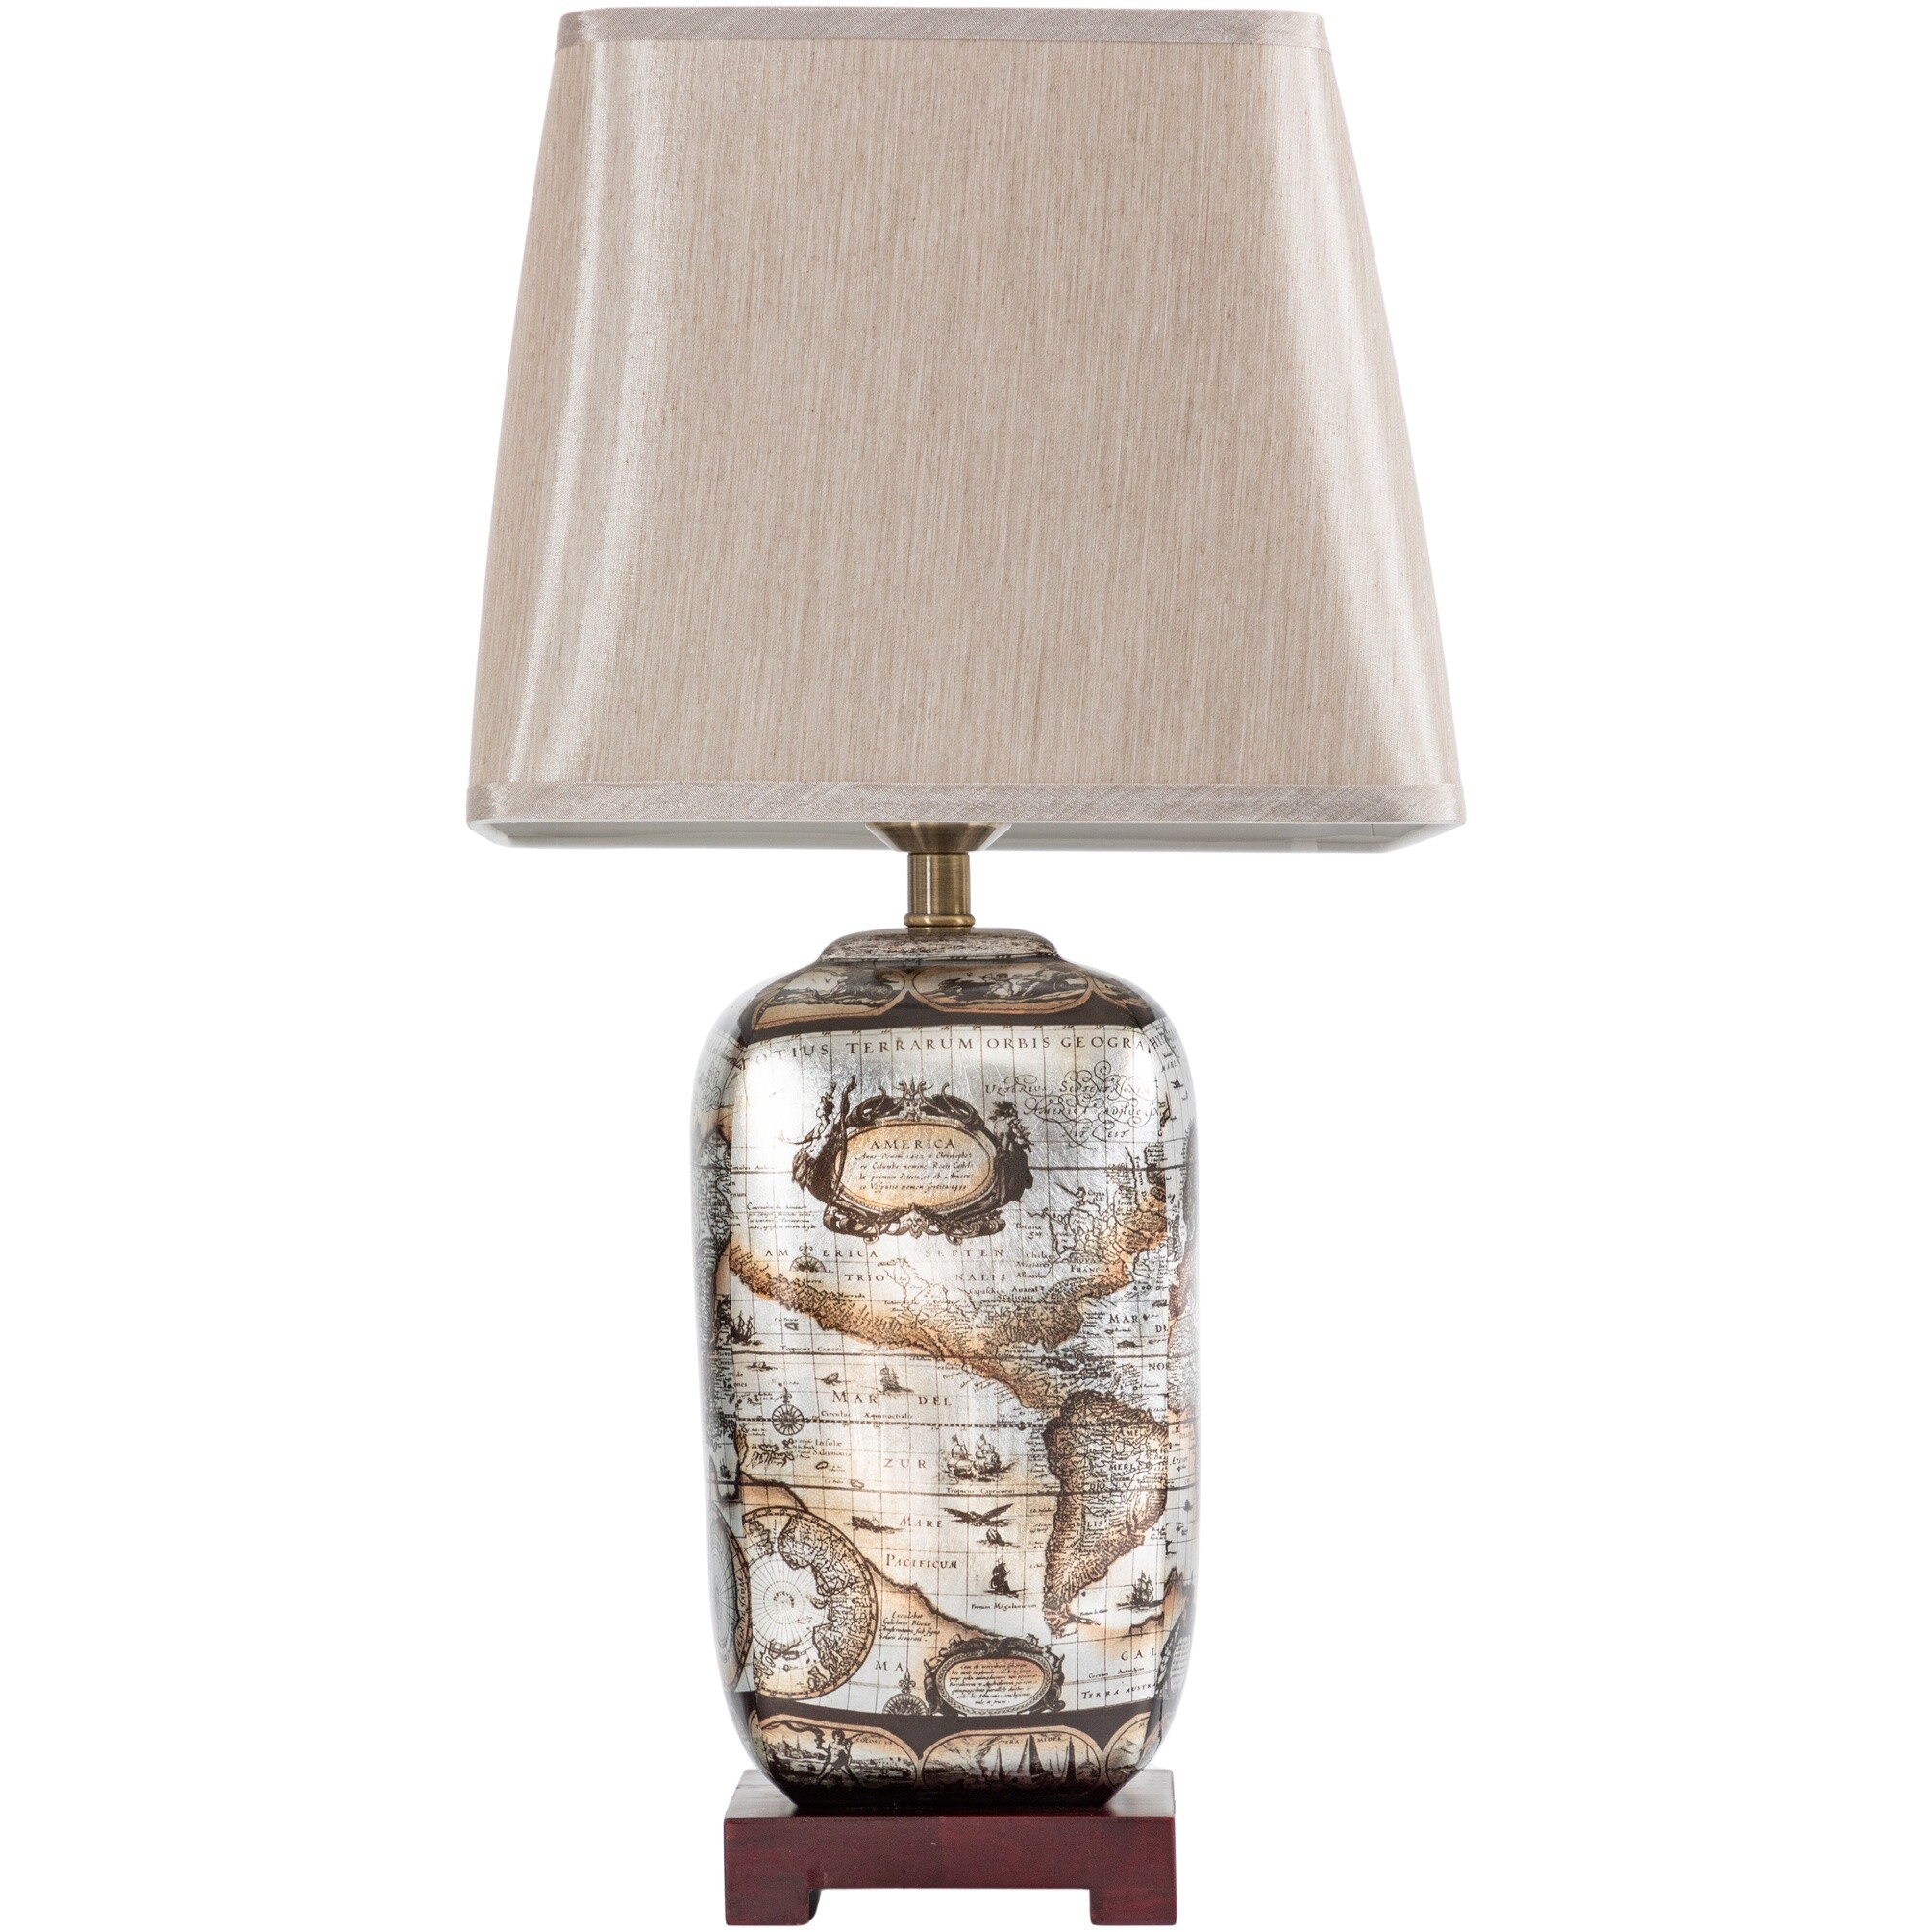 Лампа настольная керамическая с абажуром 66х33 см бежевая, коричневая 58-069